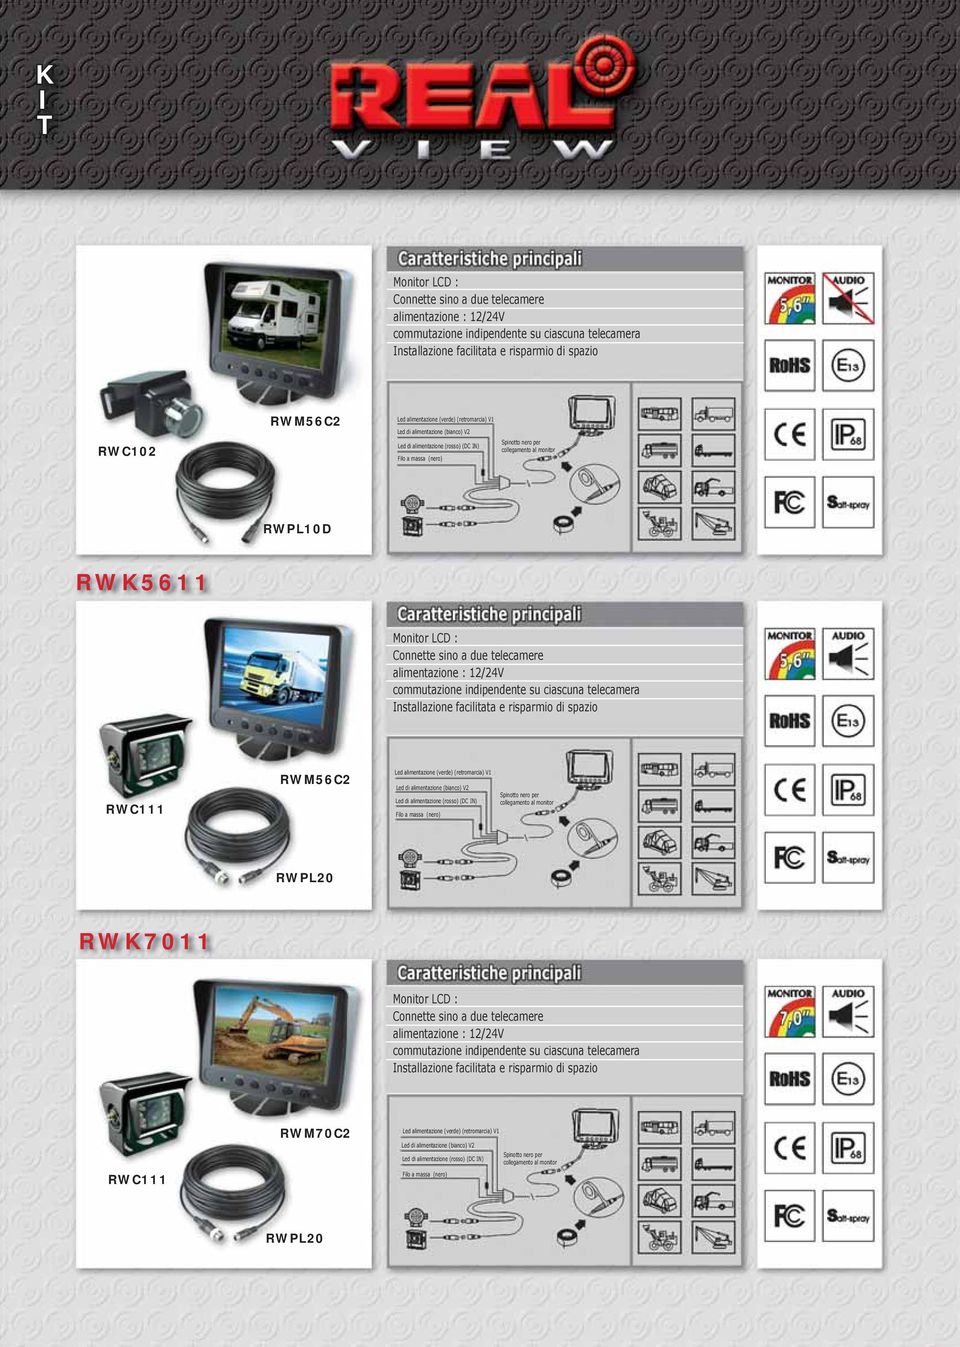 Connette sino a due telecamere alimentazione : 12/24V commutazione indipendente su ciascuna telecamera Installazione facilitata e risparmio di spazio RWC111 RWM56C2 Led alimentazione (verde)